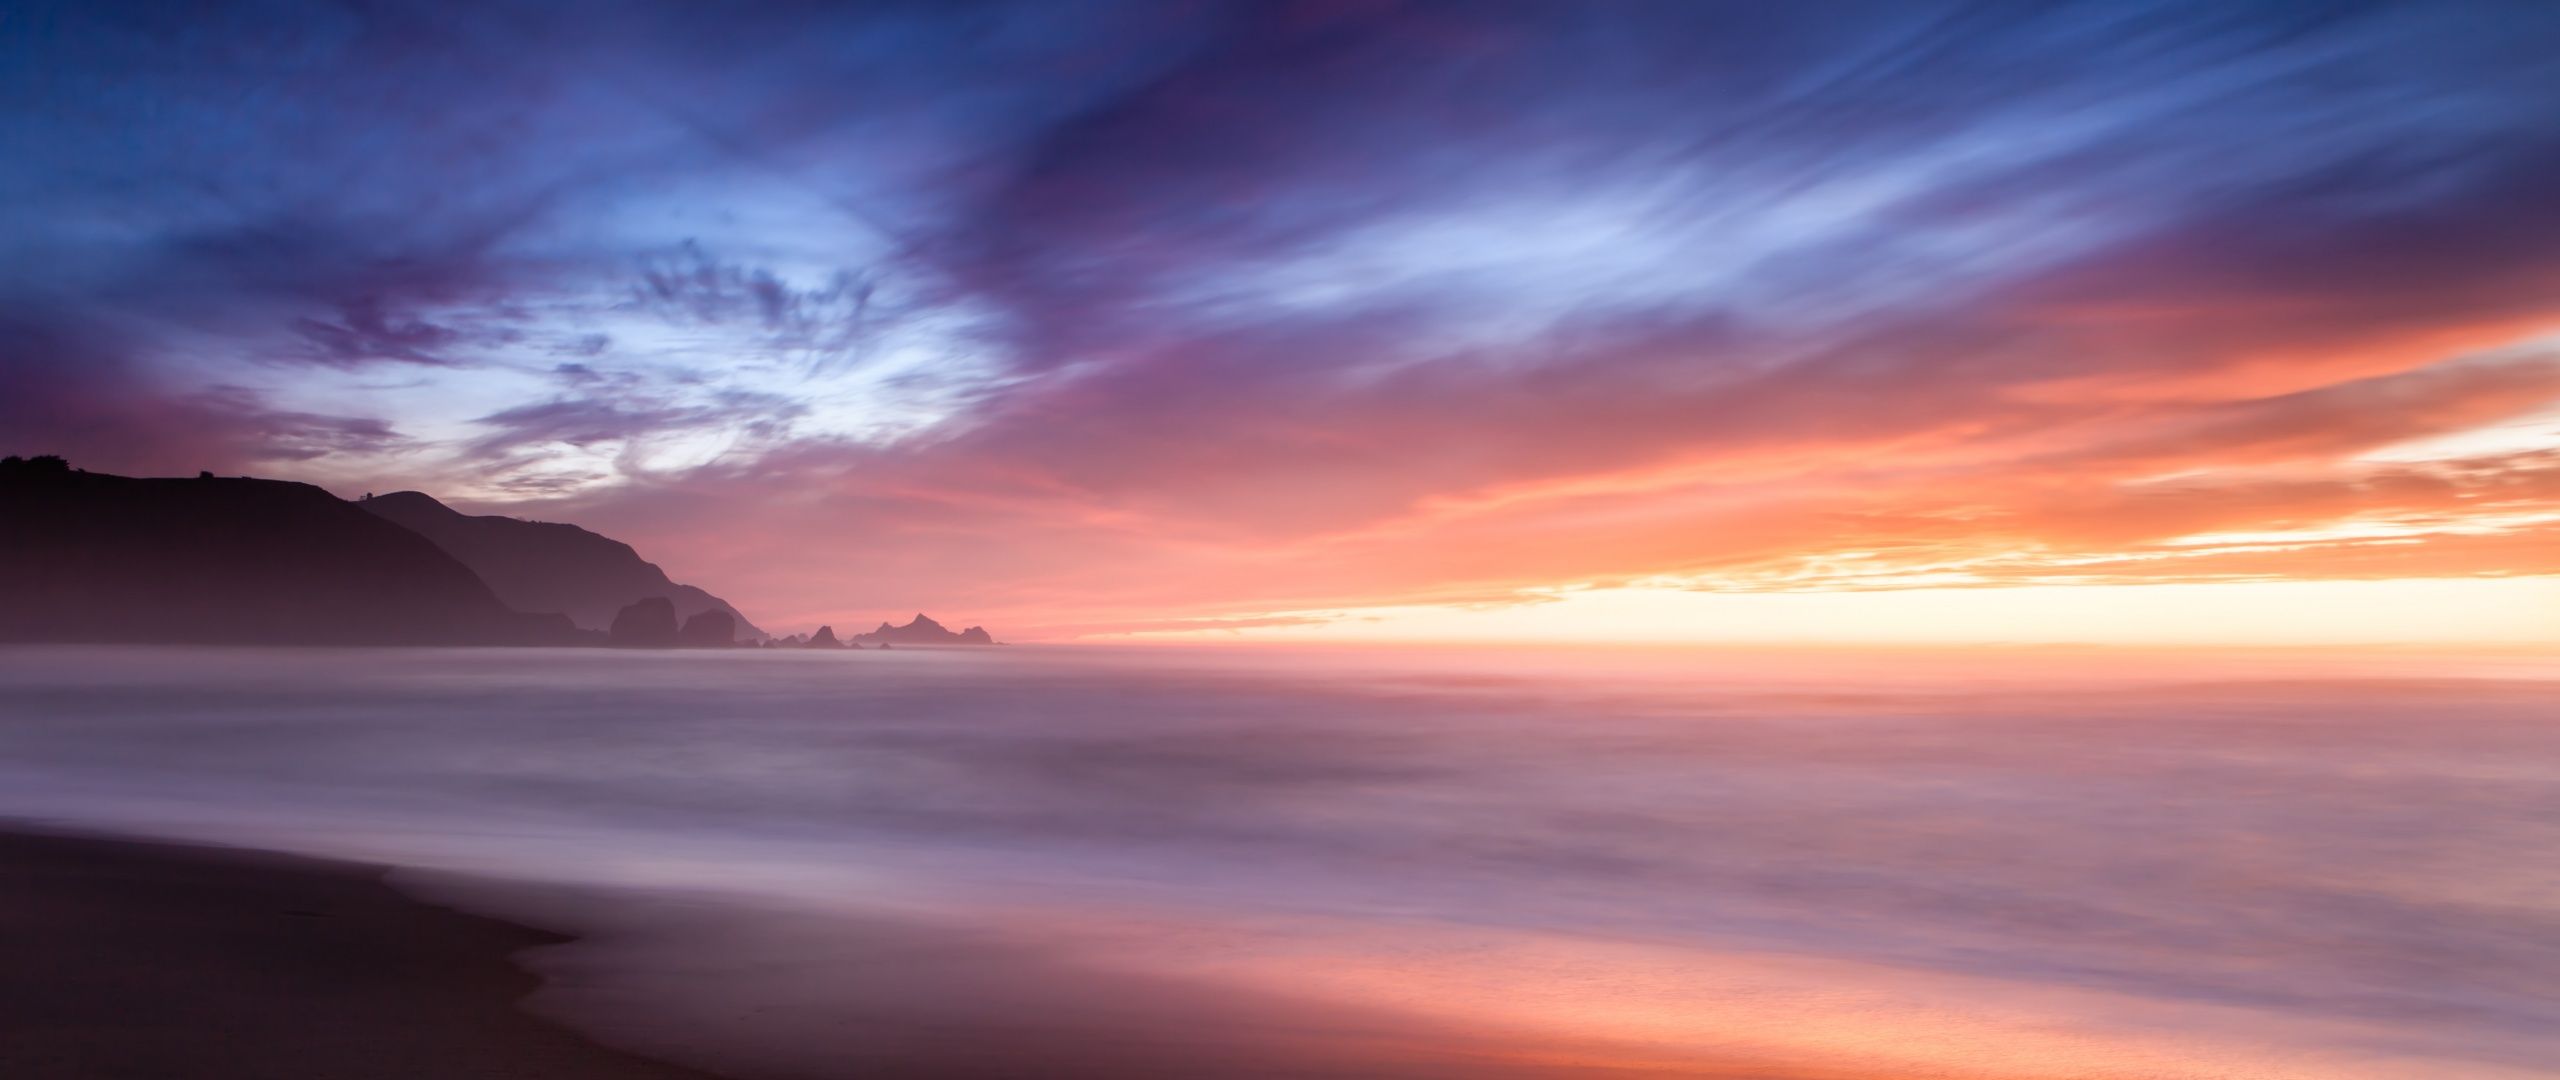 Beach Wallpaper 4K, Horizon, Sunset, Cloudy Sky